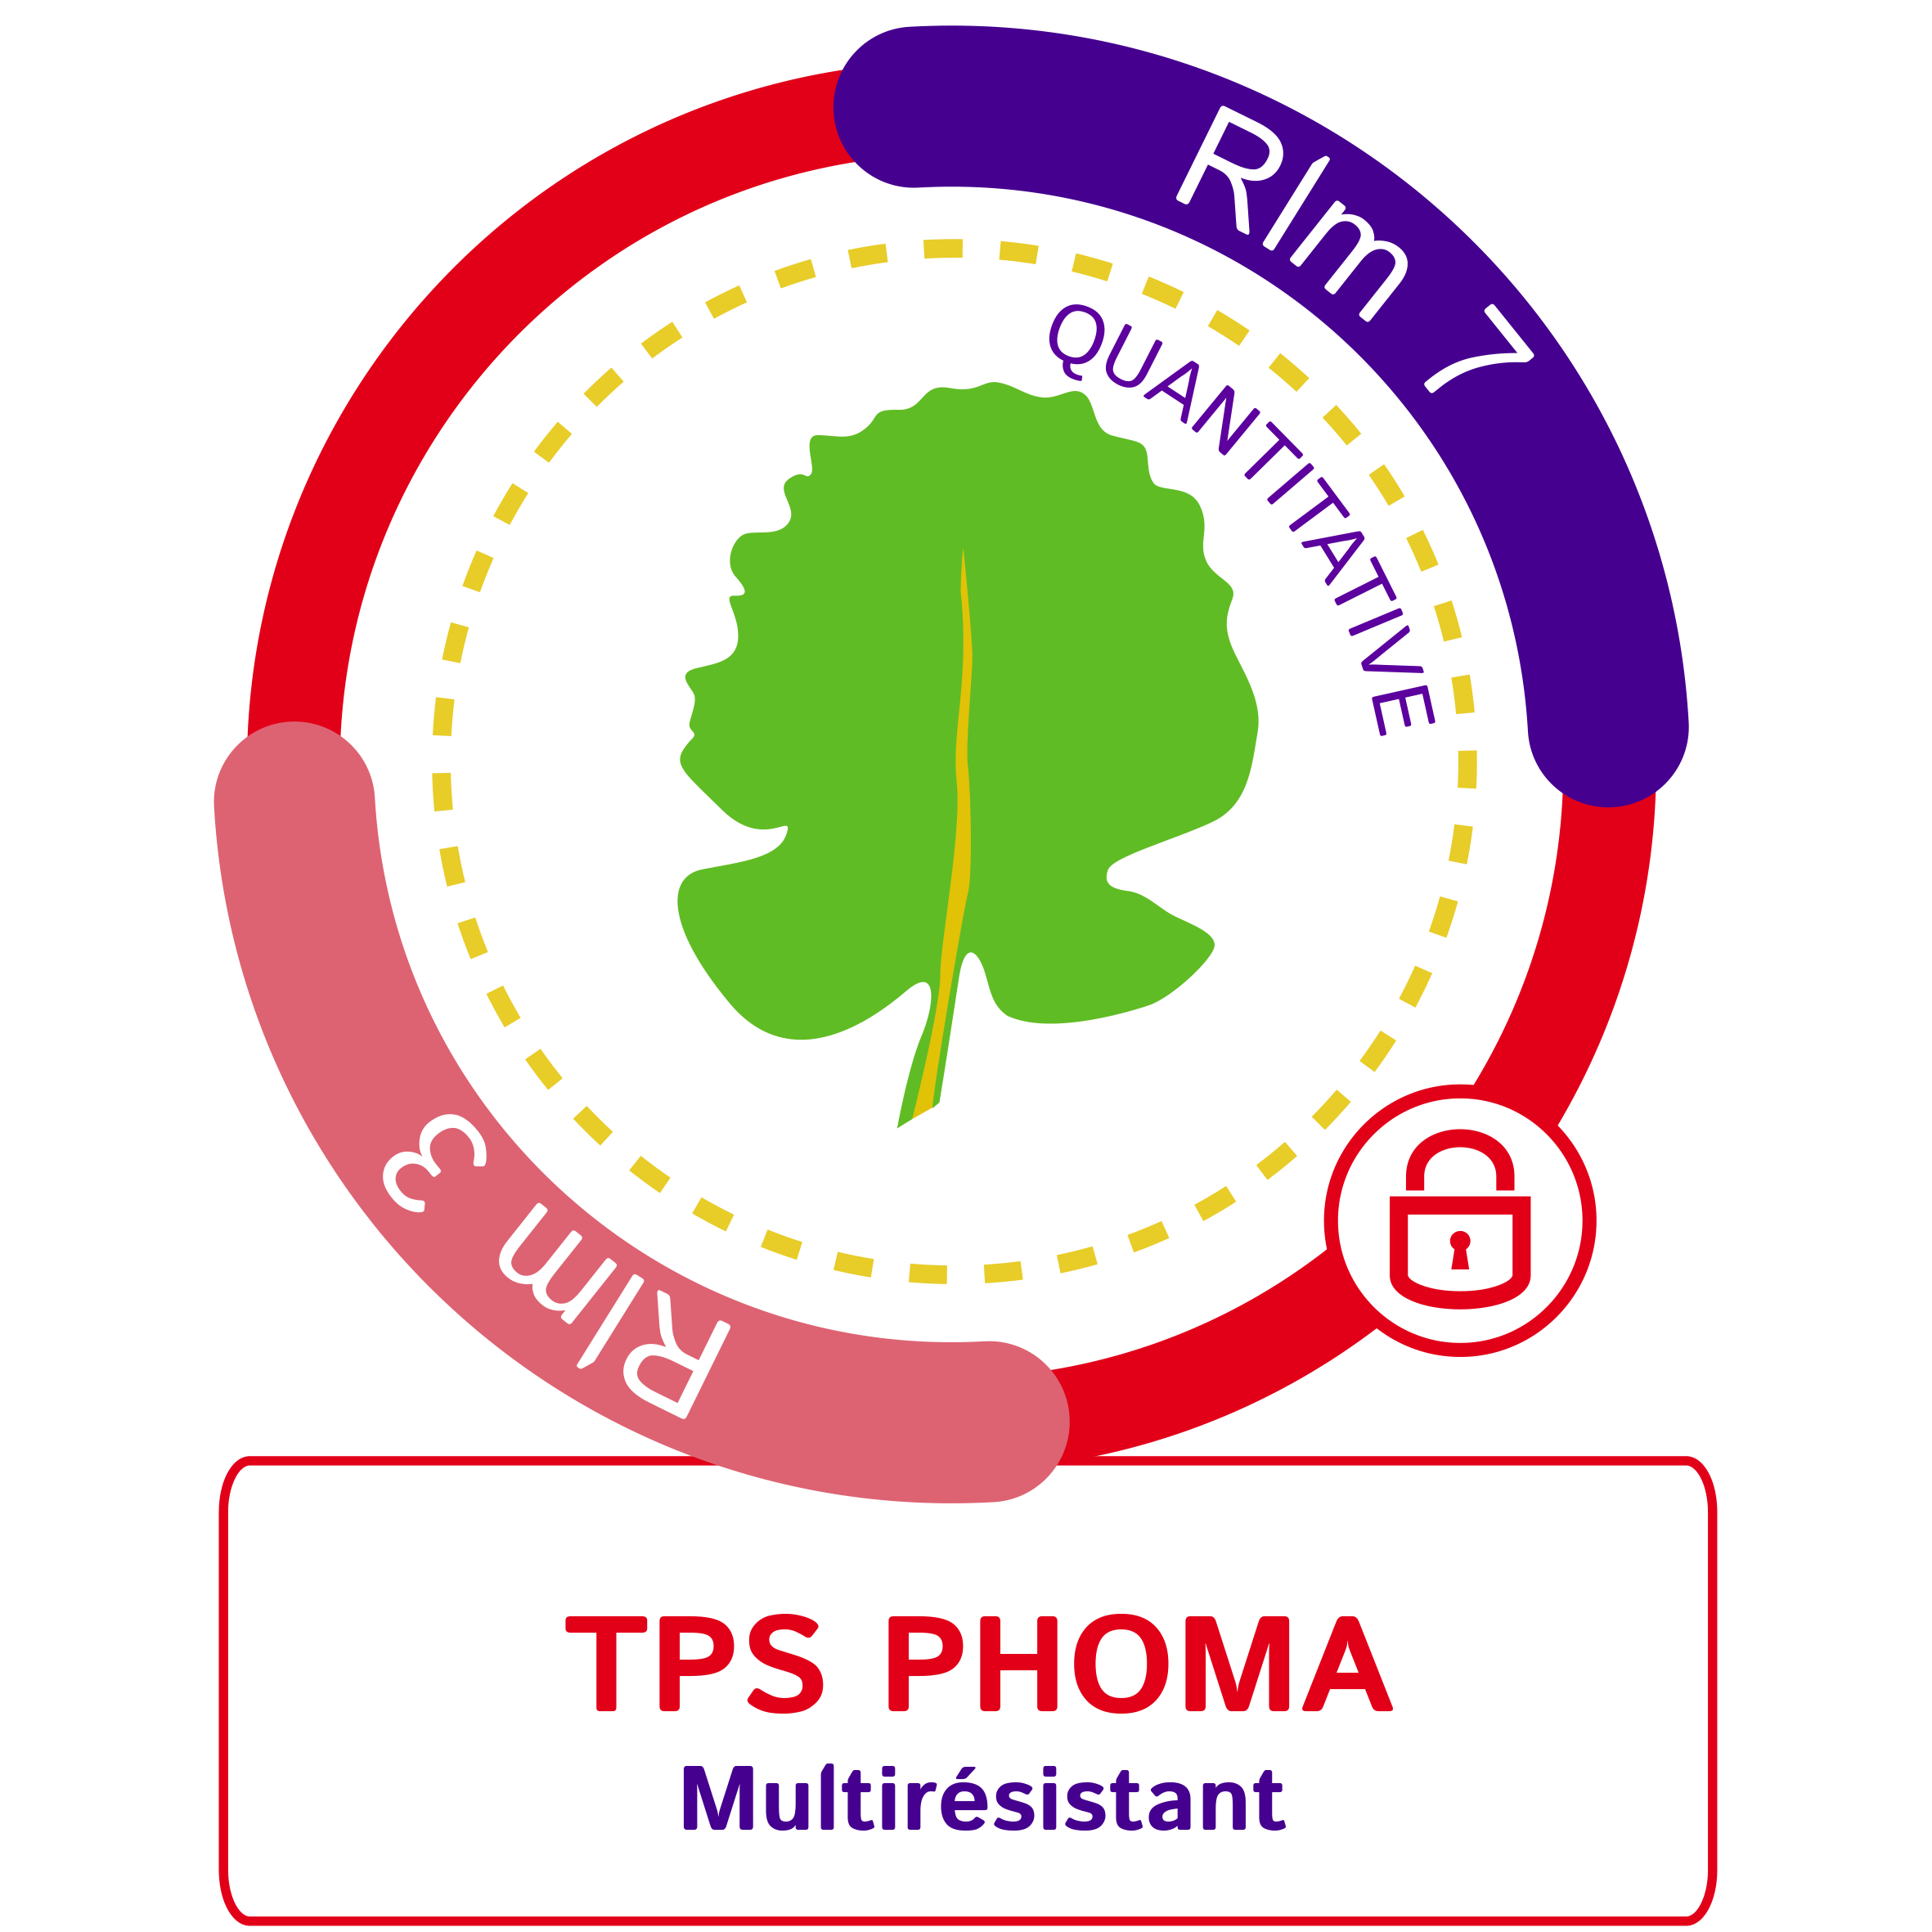 Visuel TPS phoma RLM 7 + RLM 3